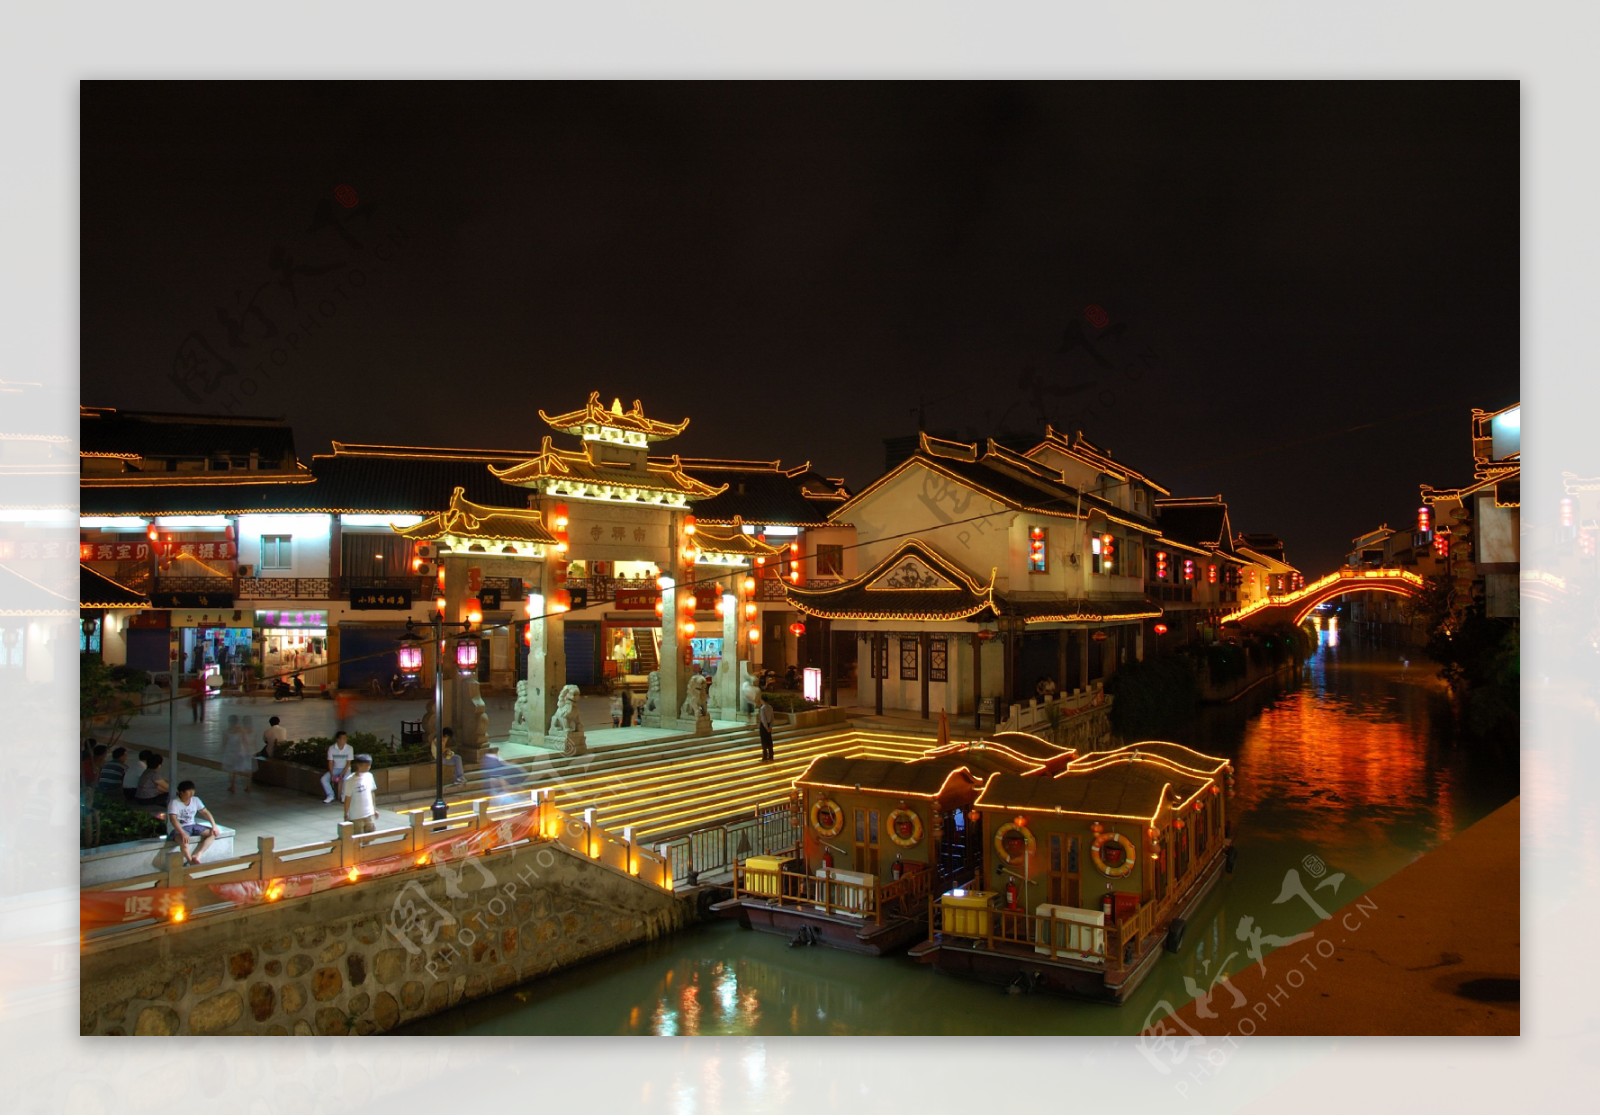 古运河南禅寺段夜景图片